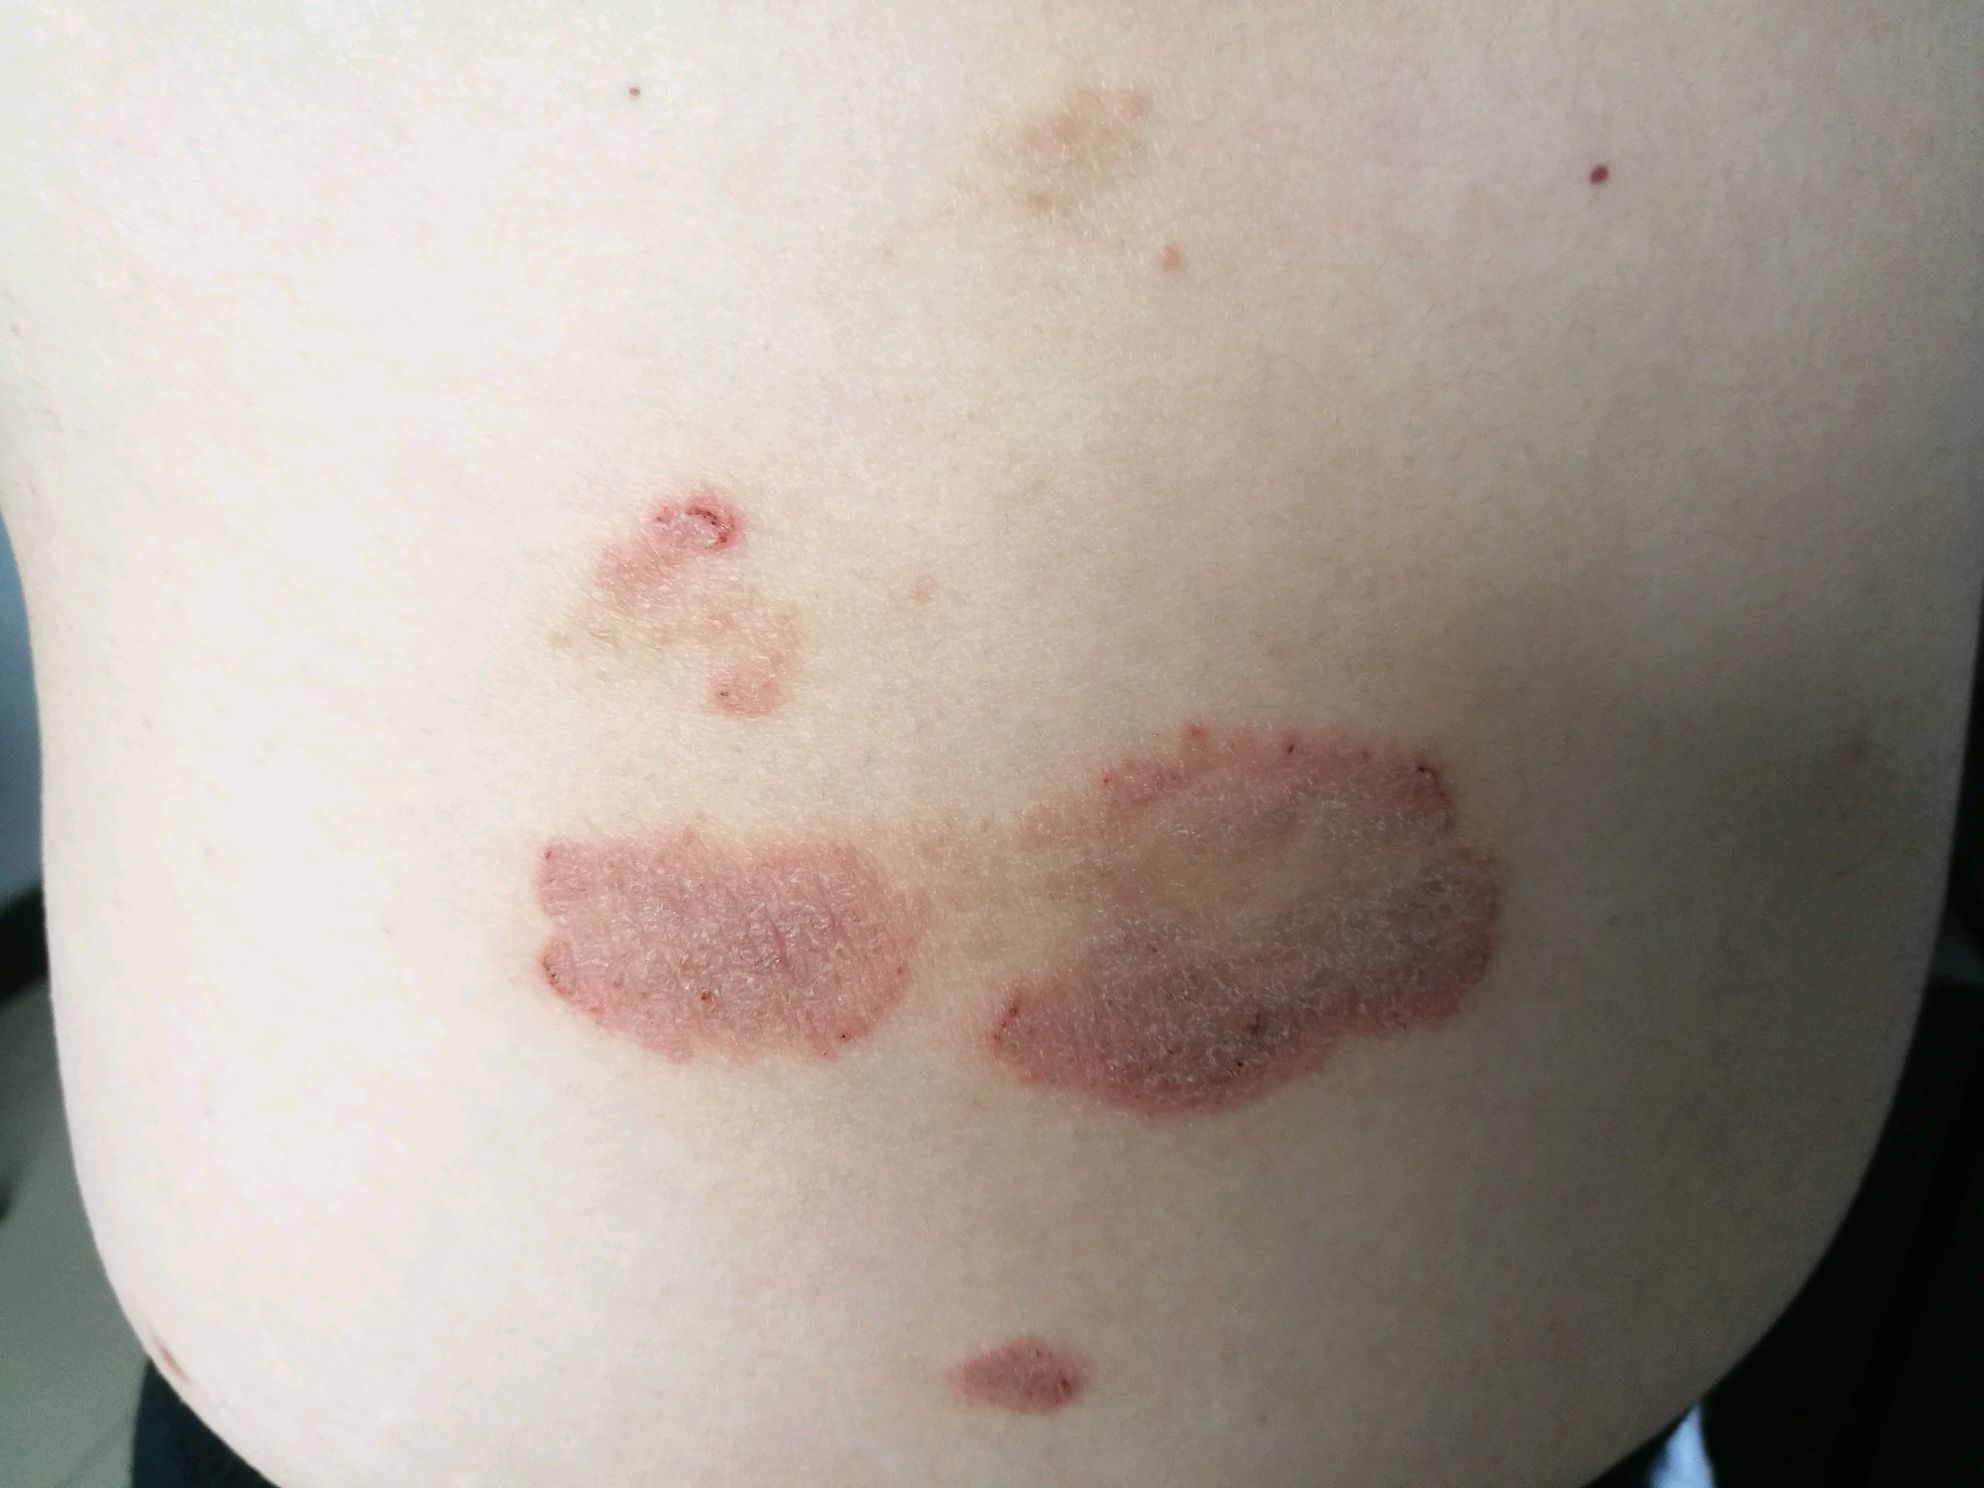 银屑病俗称牛皮癣,是常见的红斑鳞屑性皮肤病,没有传染性,但常常给